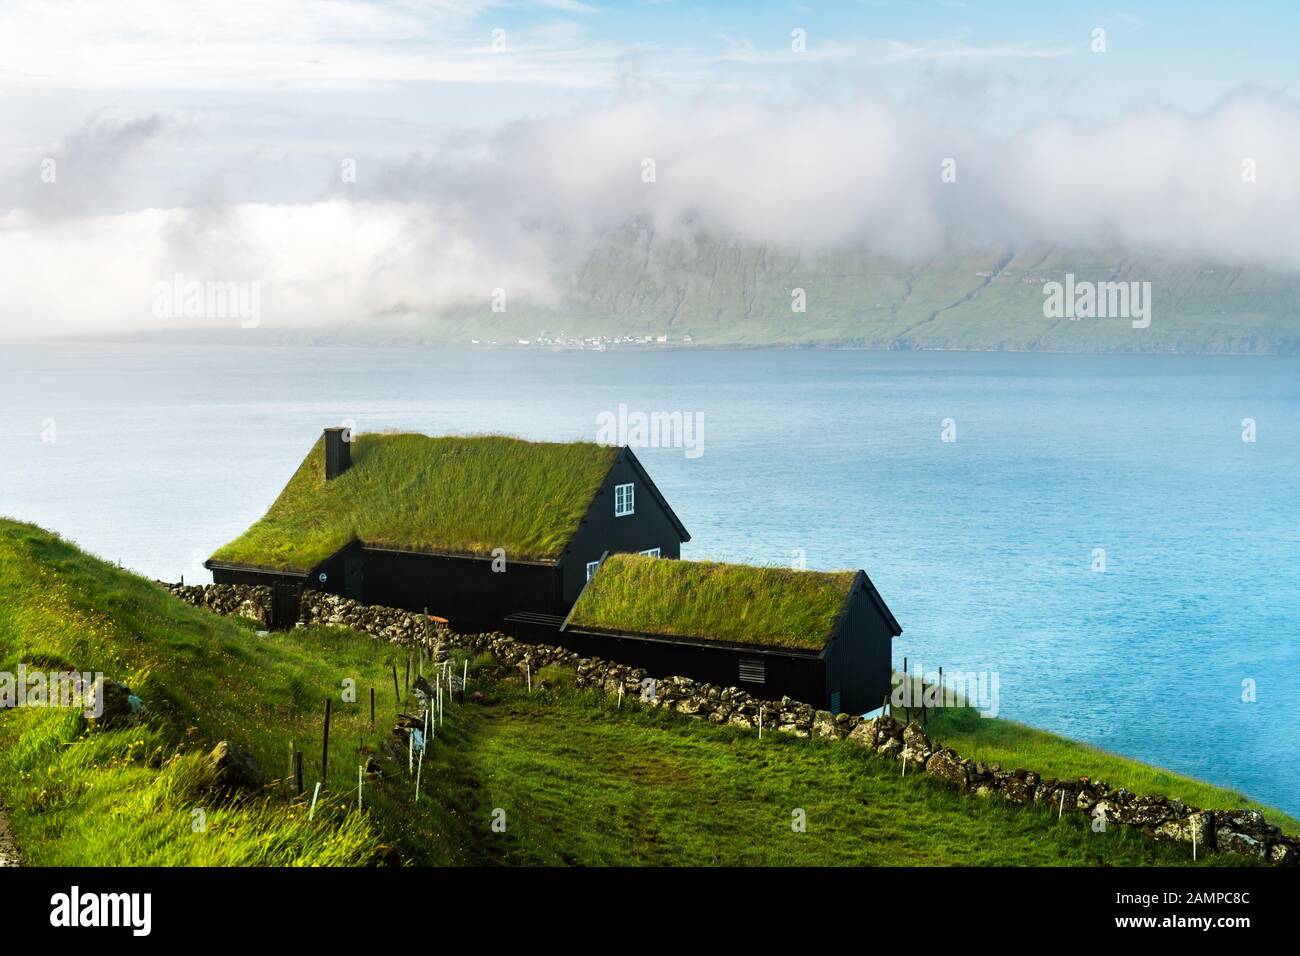 Nebeliger Blick auf ein Haus mit Grasdach im Dorf Velbastadur auf der Insel Streymoy, den Inseln der Färöer, Dänemark. Landschaftsfotografie Stockfoto